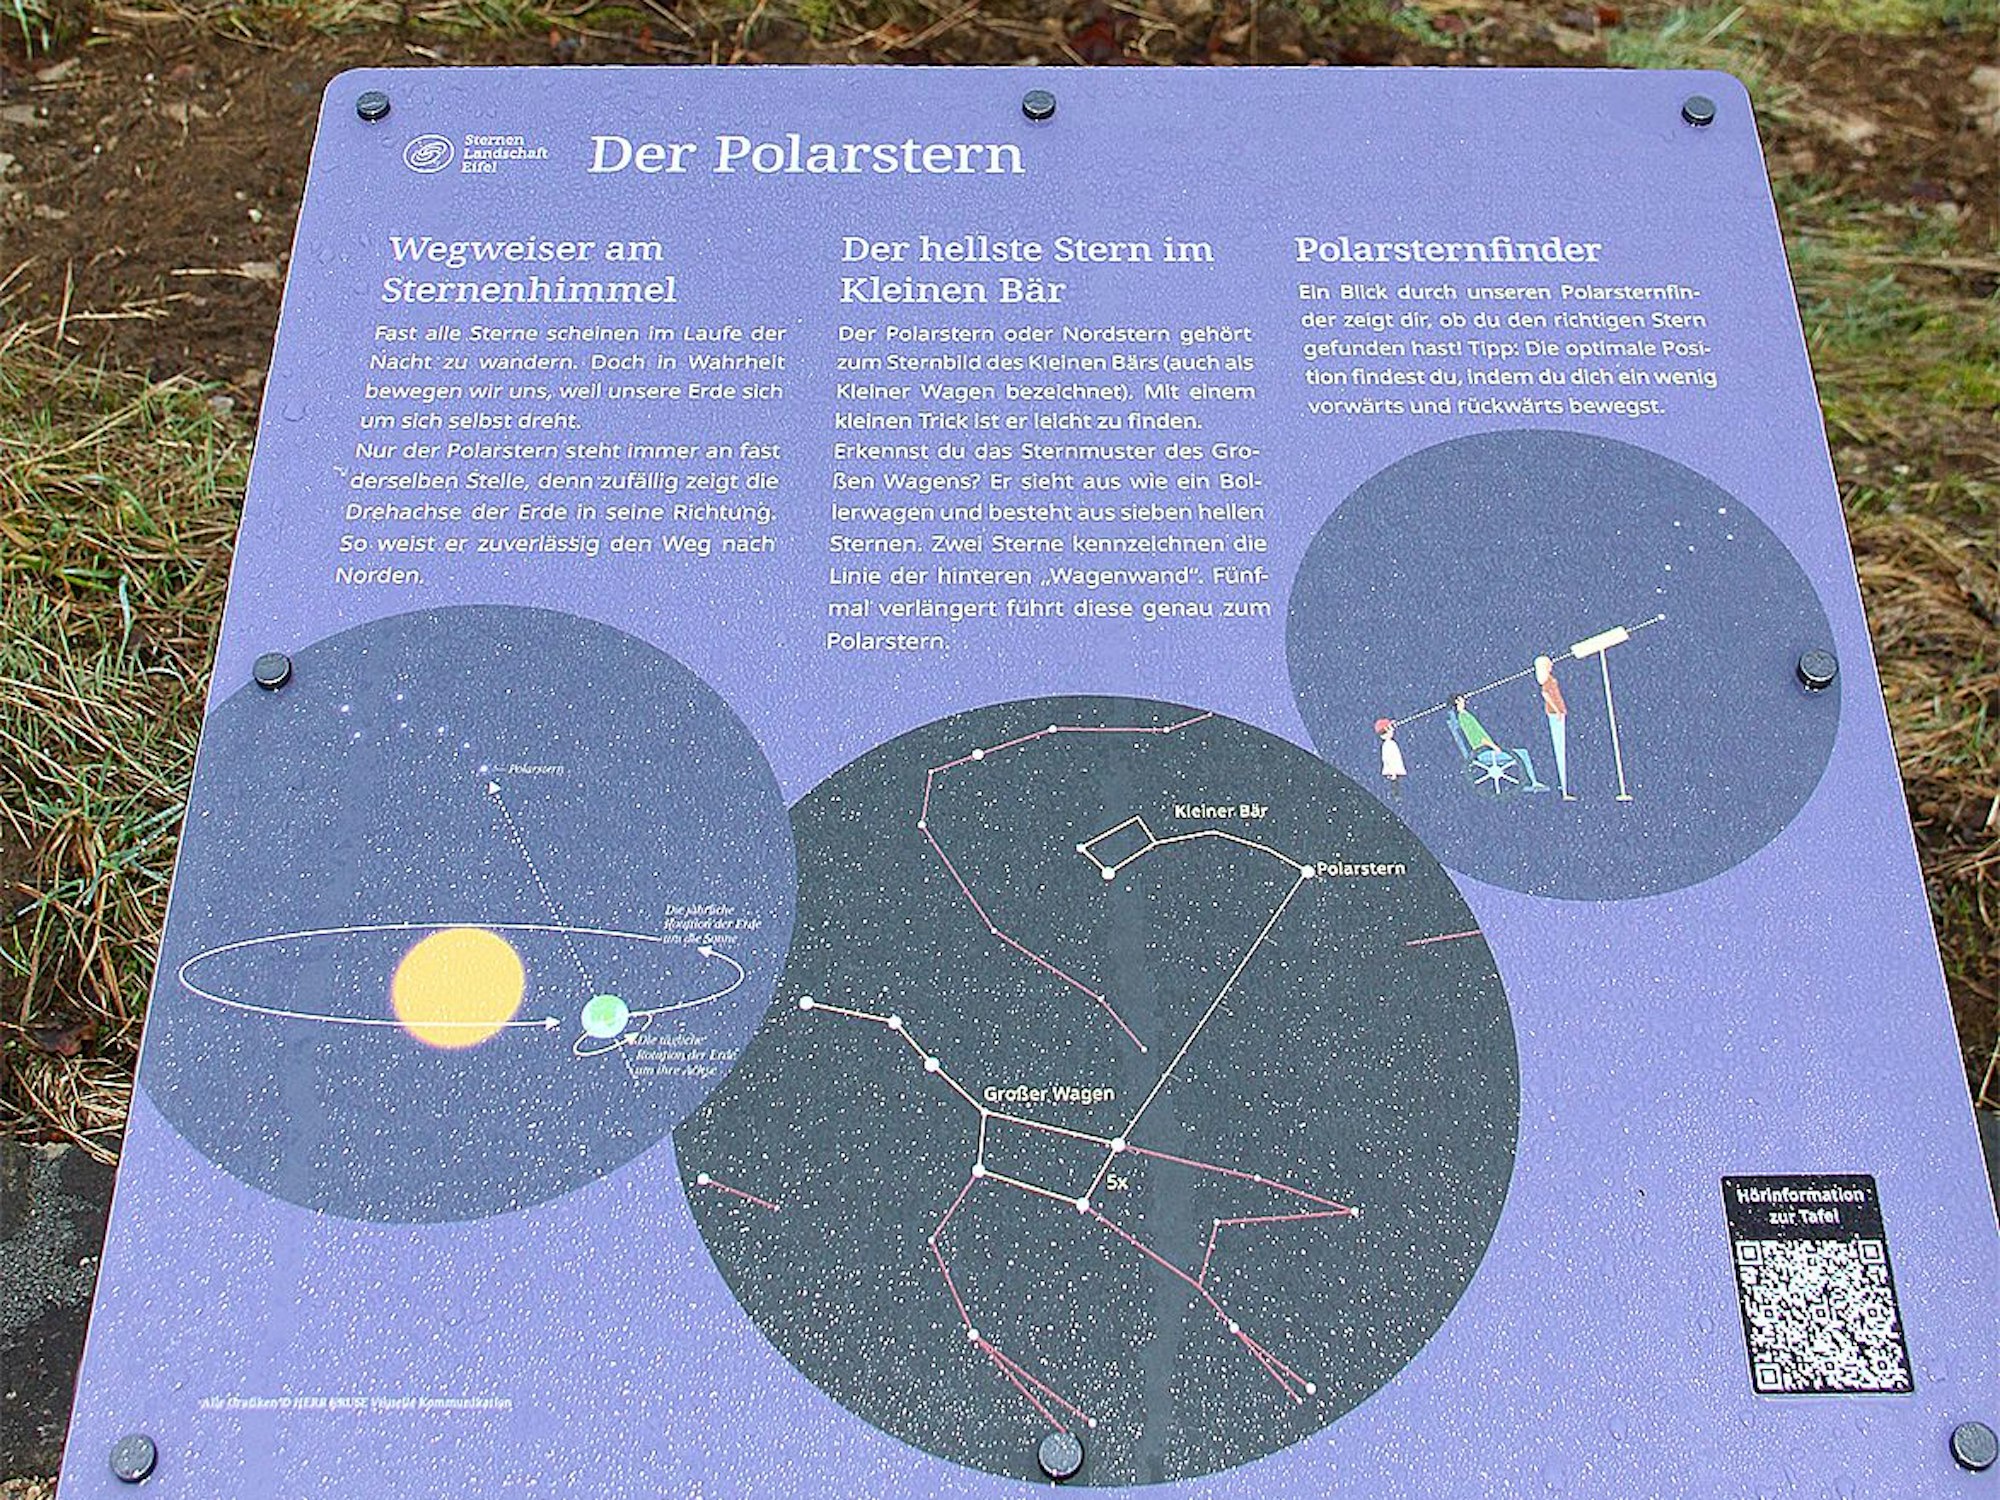 Auf Infotafeln werden zahlreiche Sterne erklärt, hier geht es um den Polarstern.